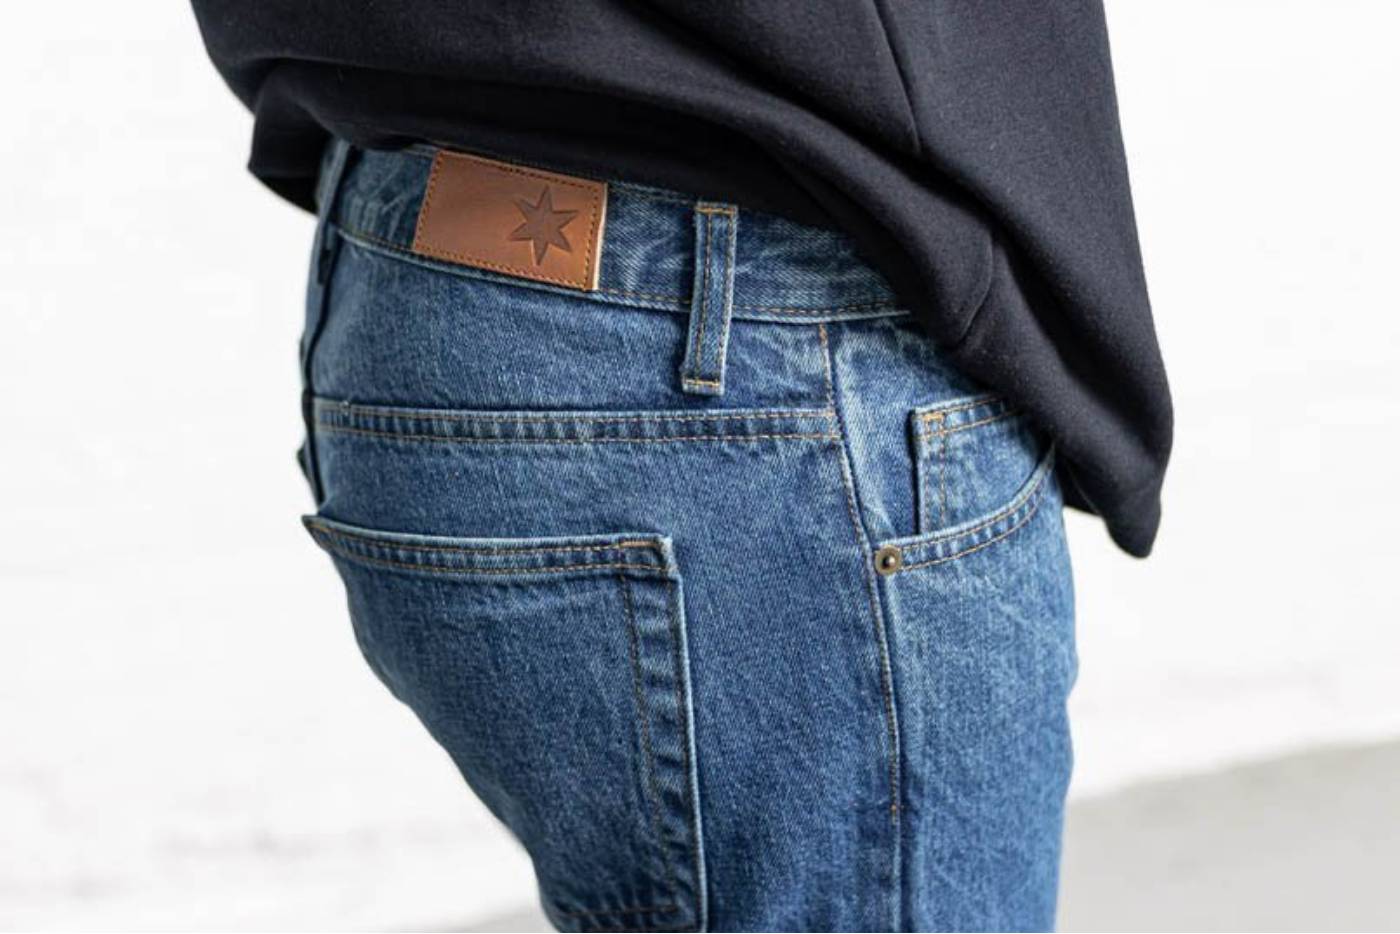 Men's Cotton Denim Jeans